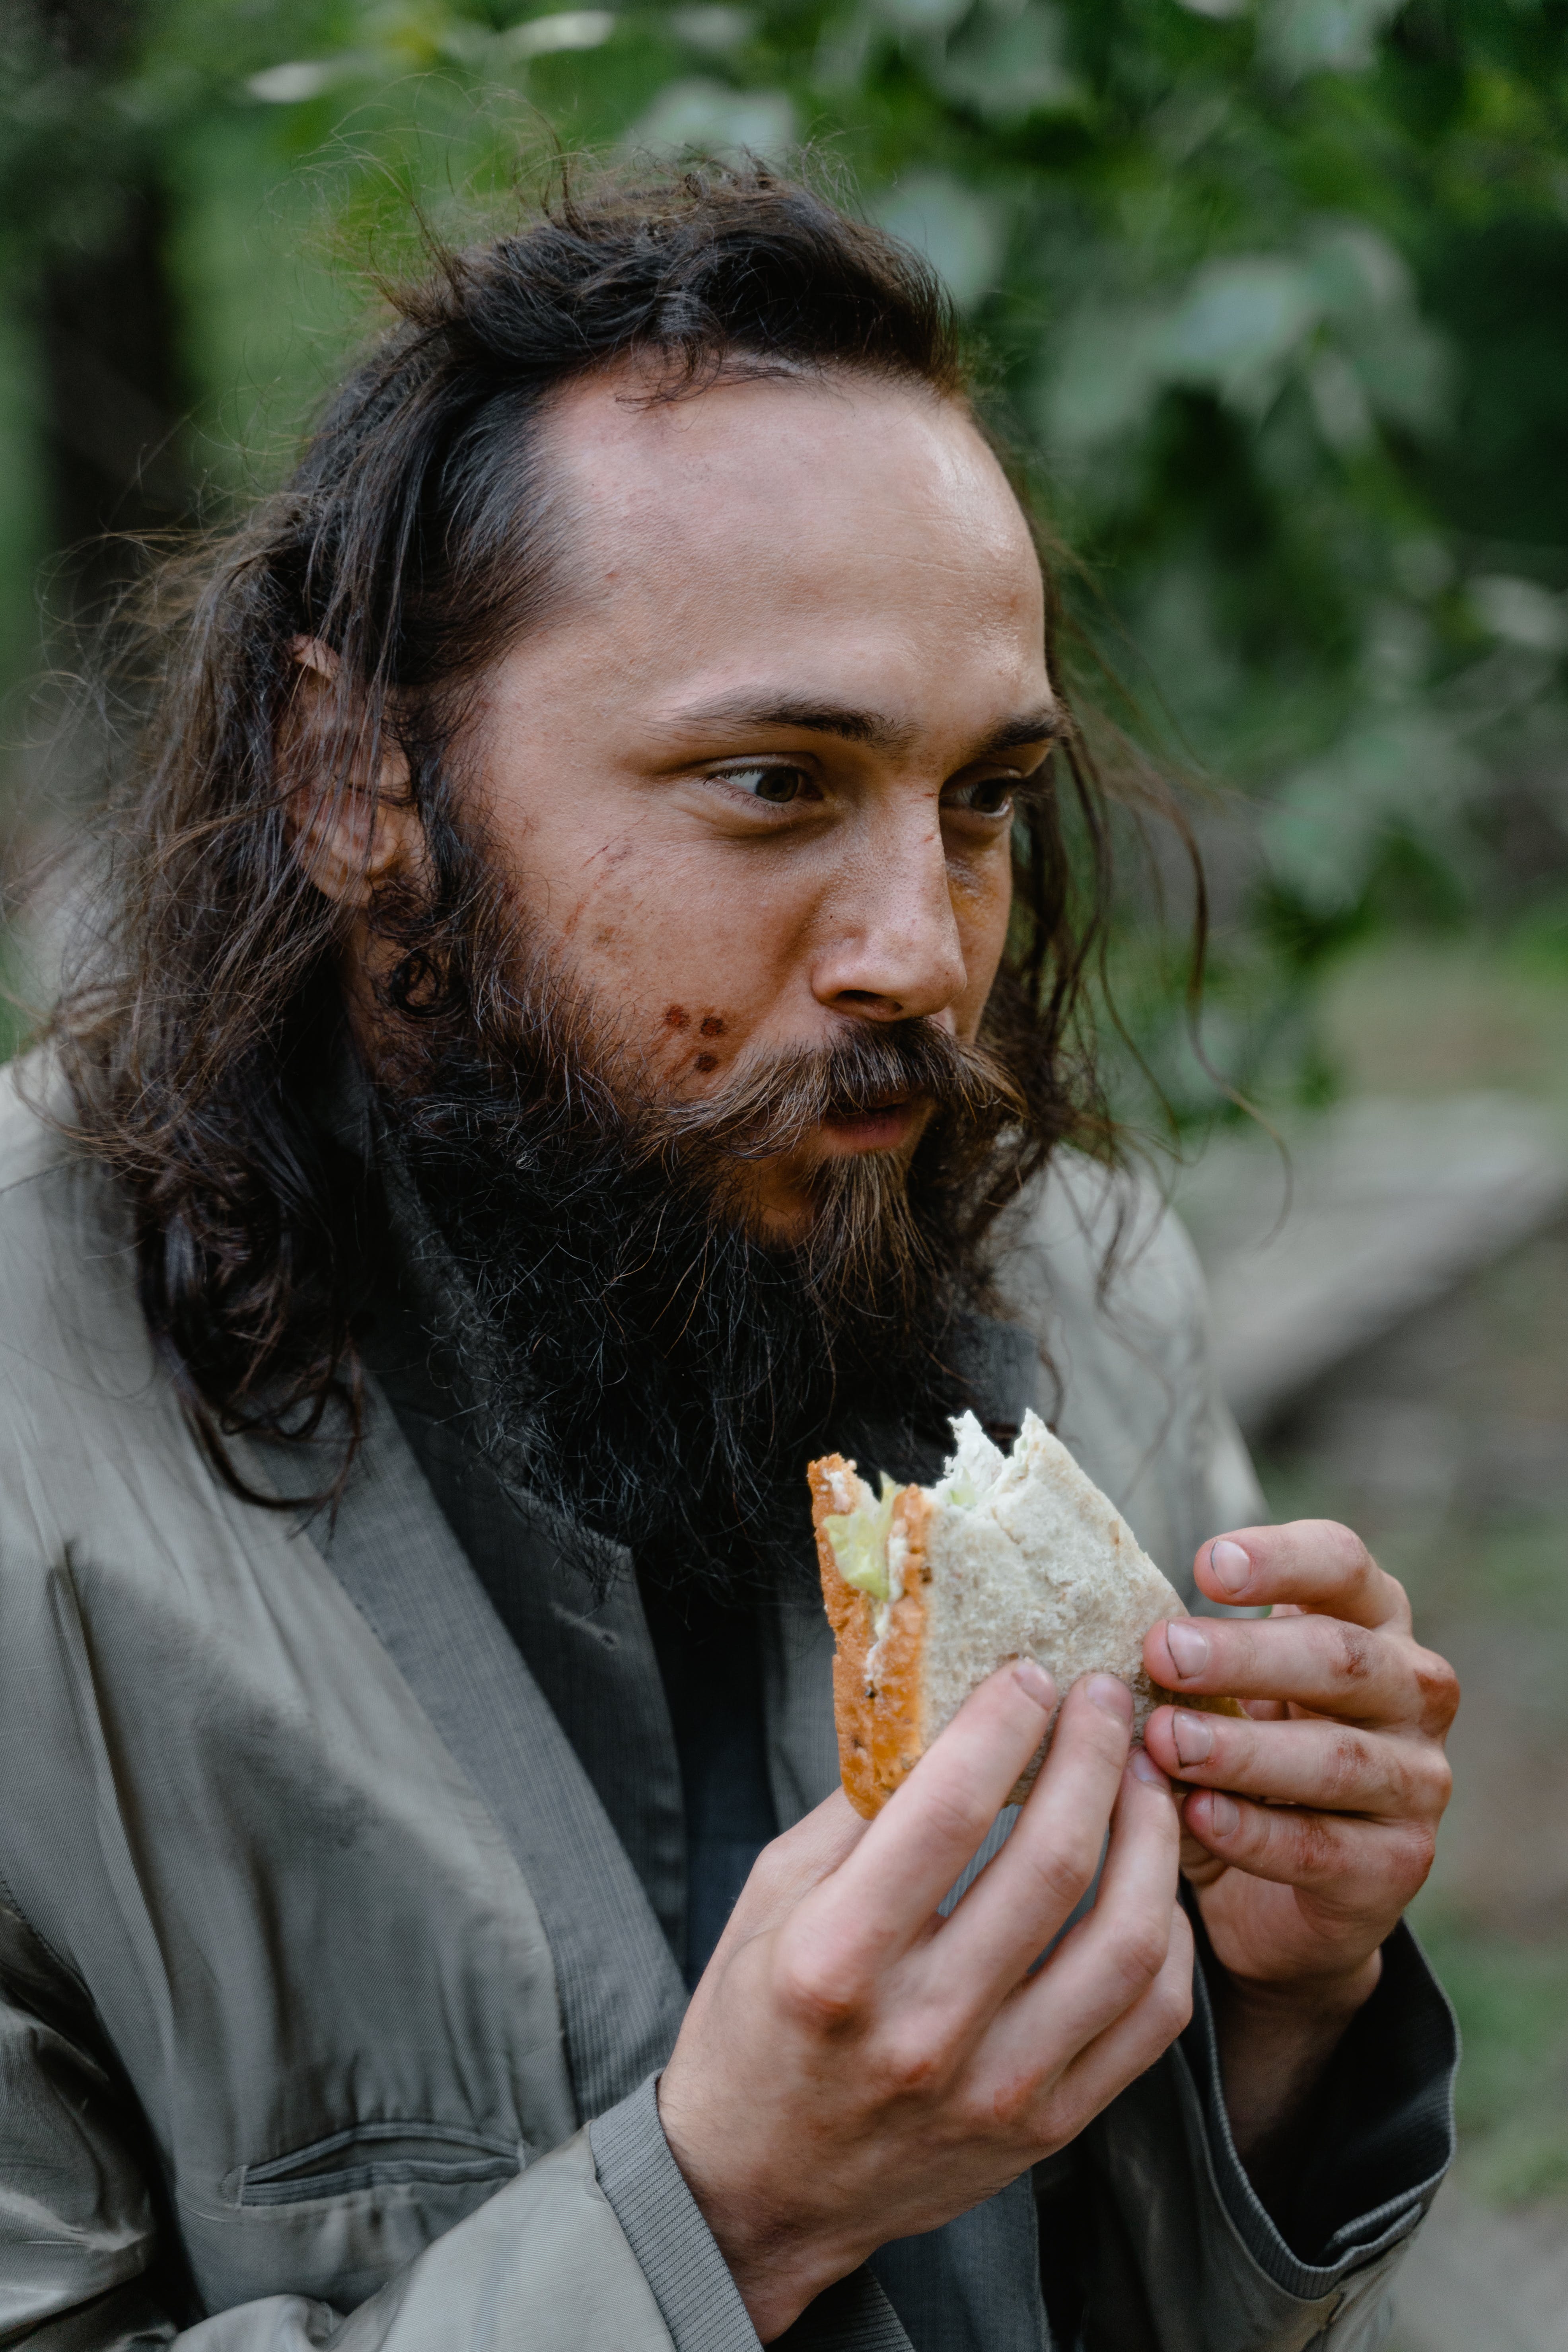 Ein obdachloser Mann sieht glücklich aus, während er etwas isst | Quelle: Pexels